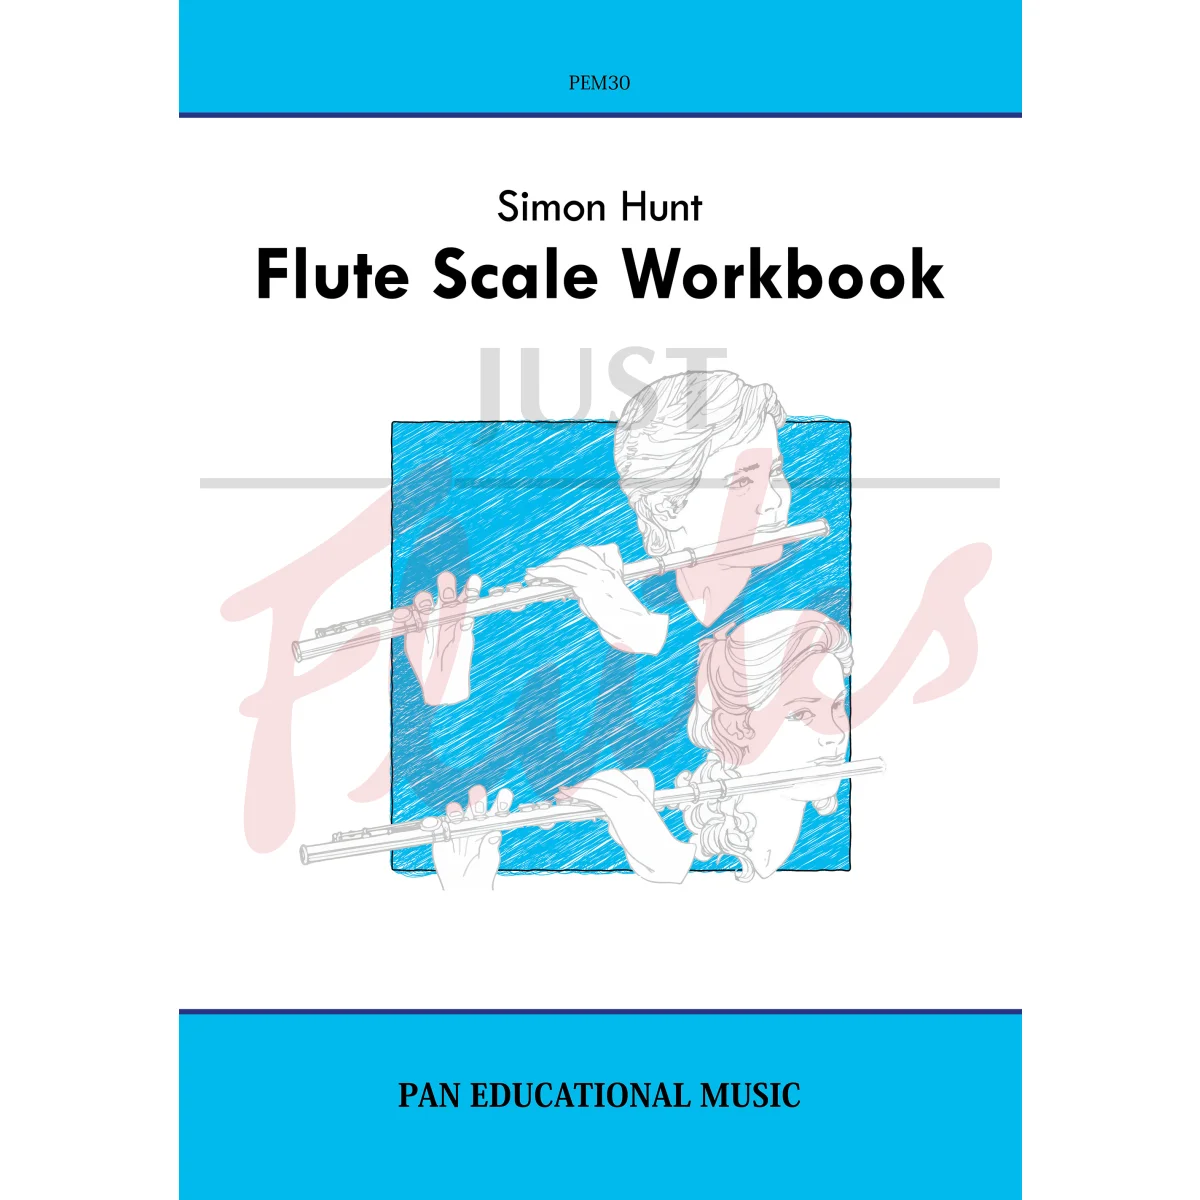 Flute Scale Workbook